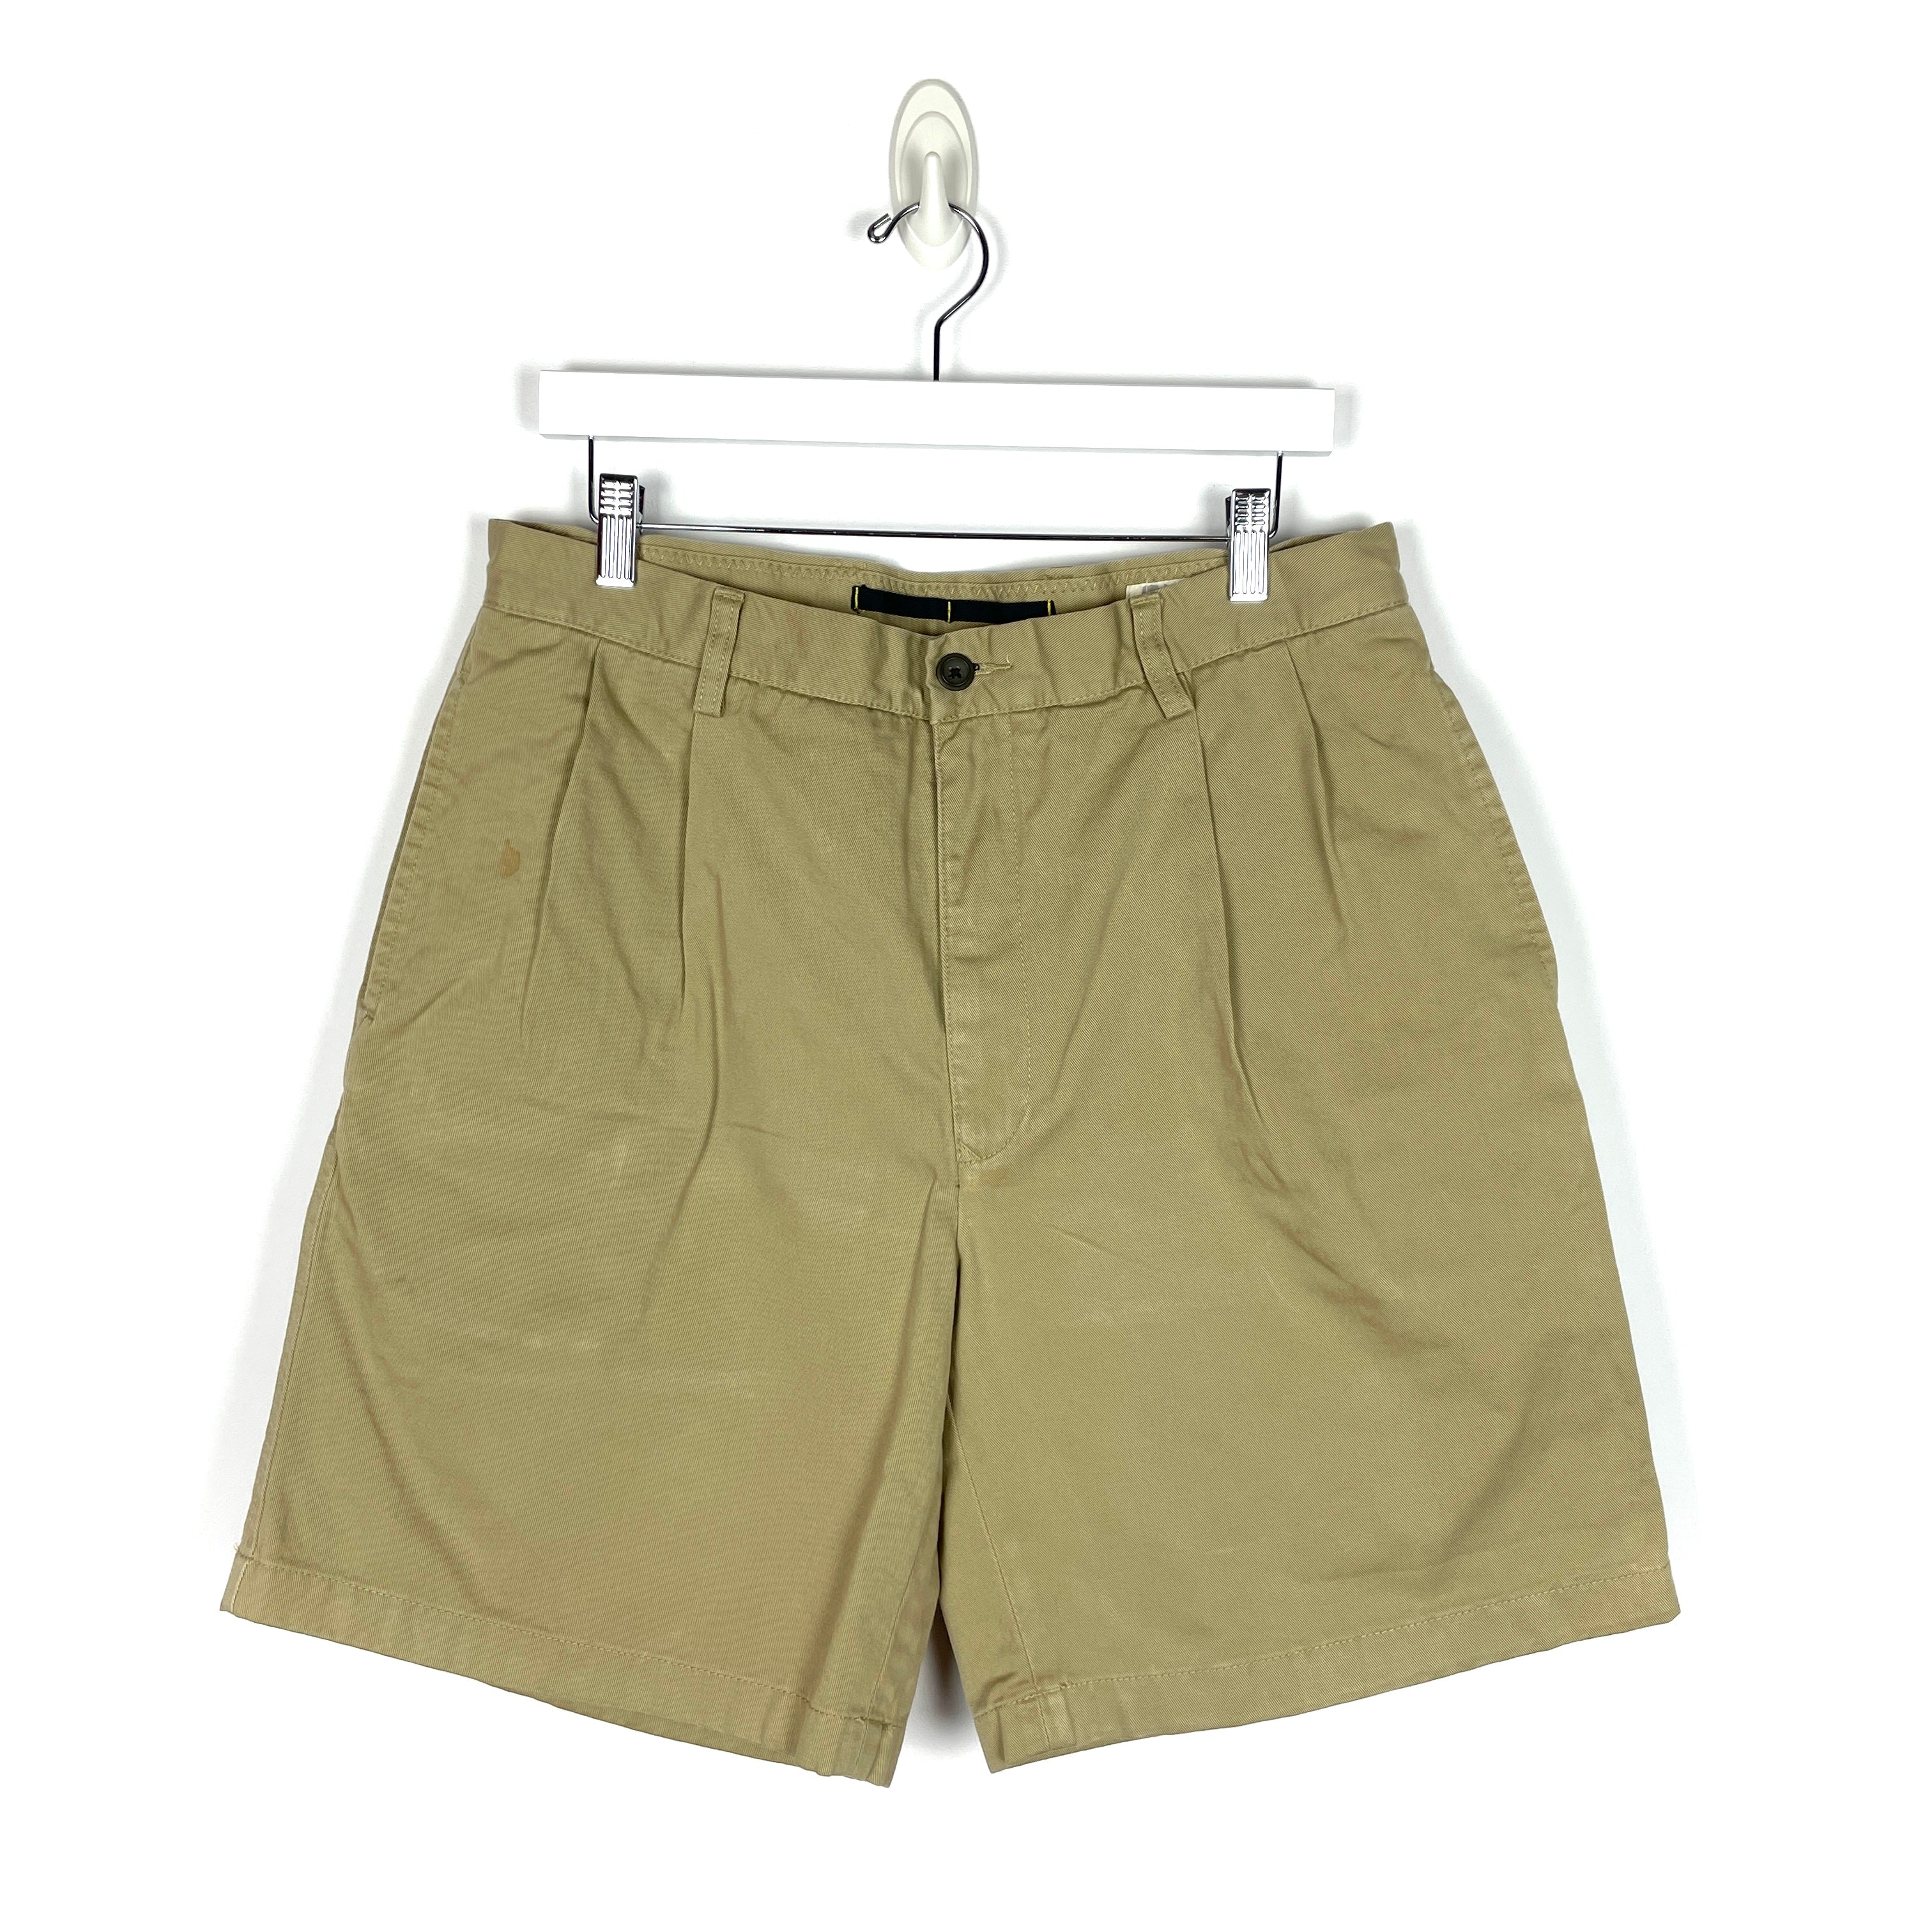 Nautica Chino Shorts - Men's 34